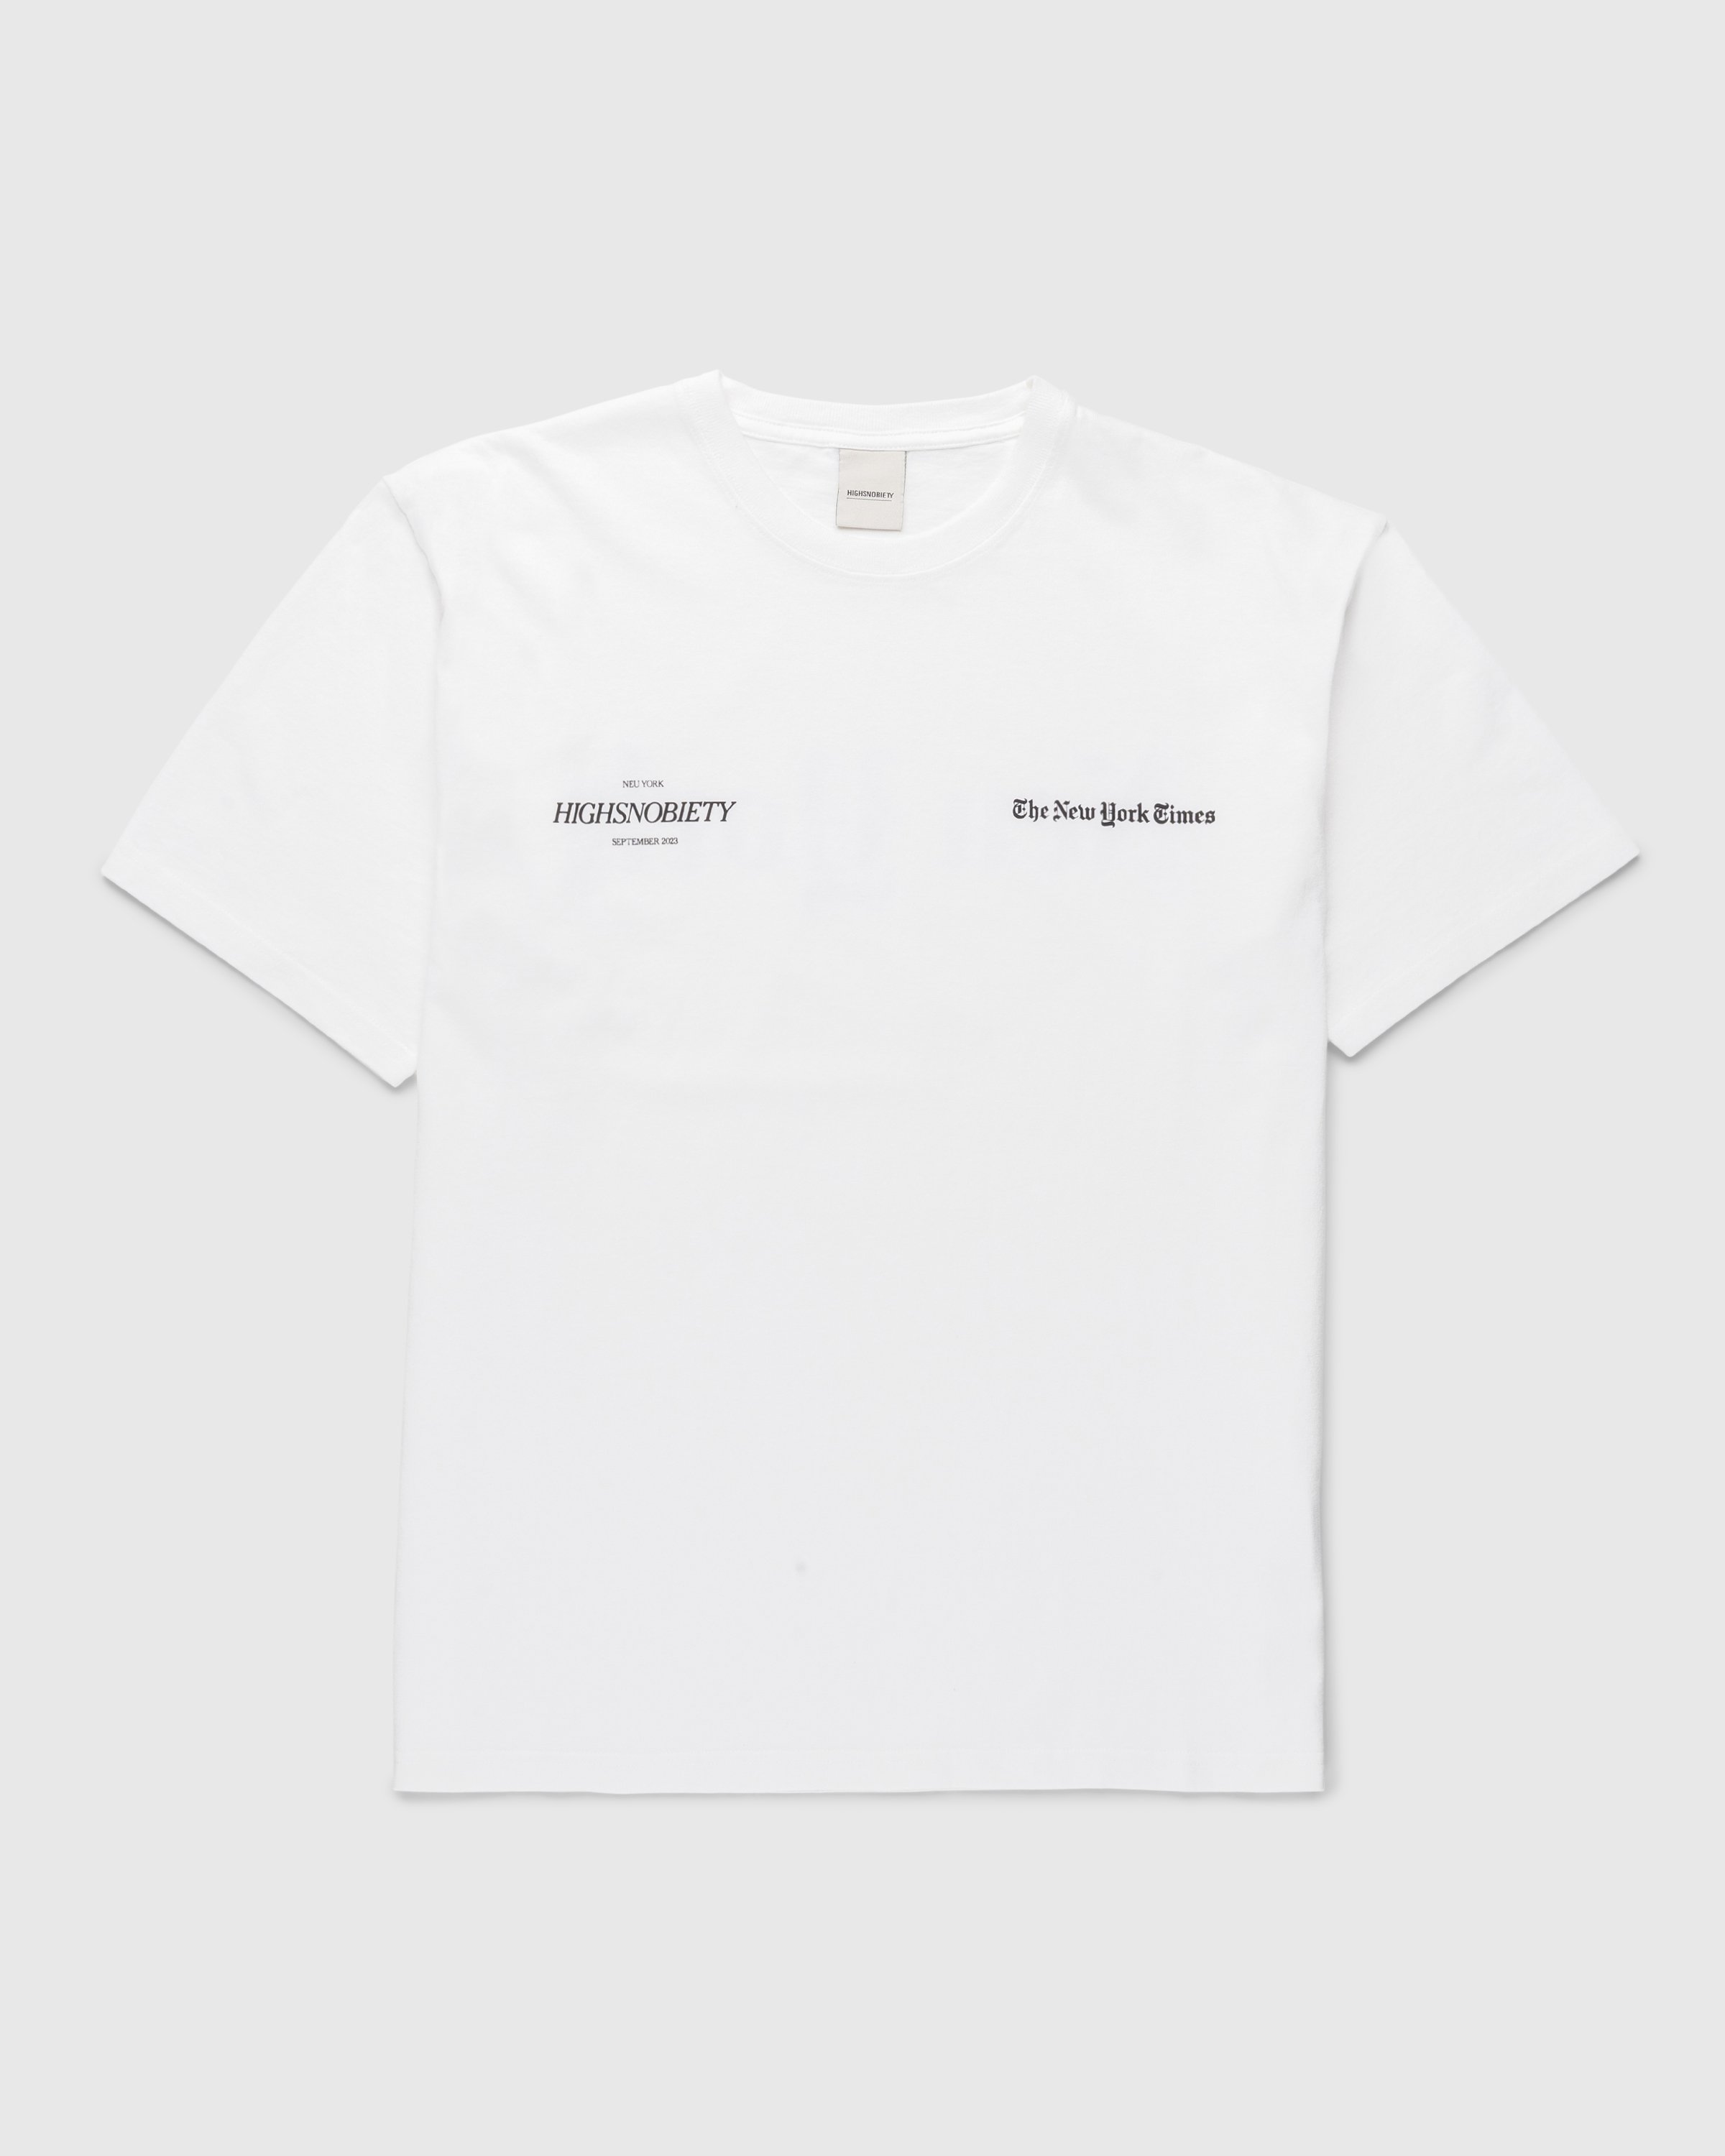 The New York Times x Highsnobiety – T-Shirt | Highsnobiety Shop